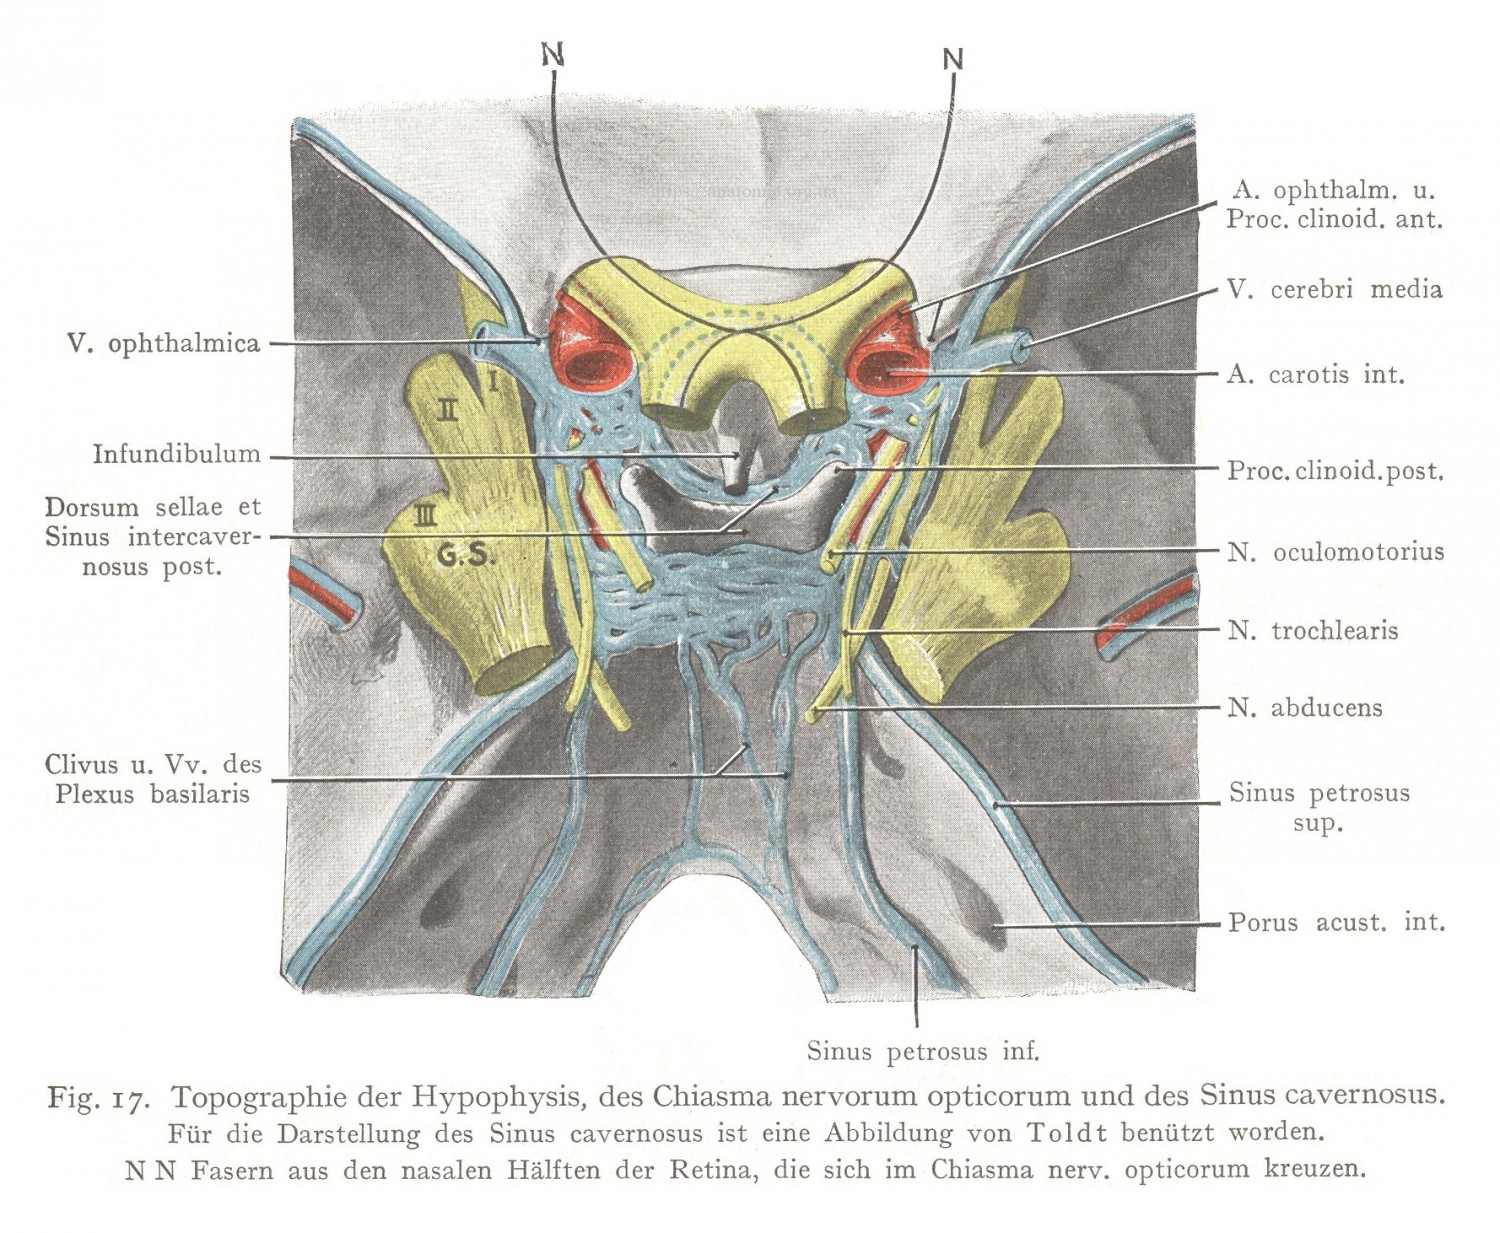 Topographie der Hypophysis, des Chiasma nervorum opticorum und des Sinus cavernosus.